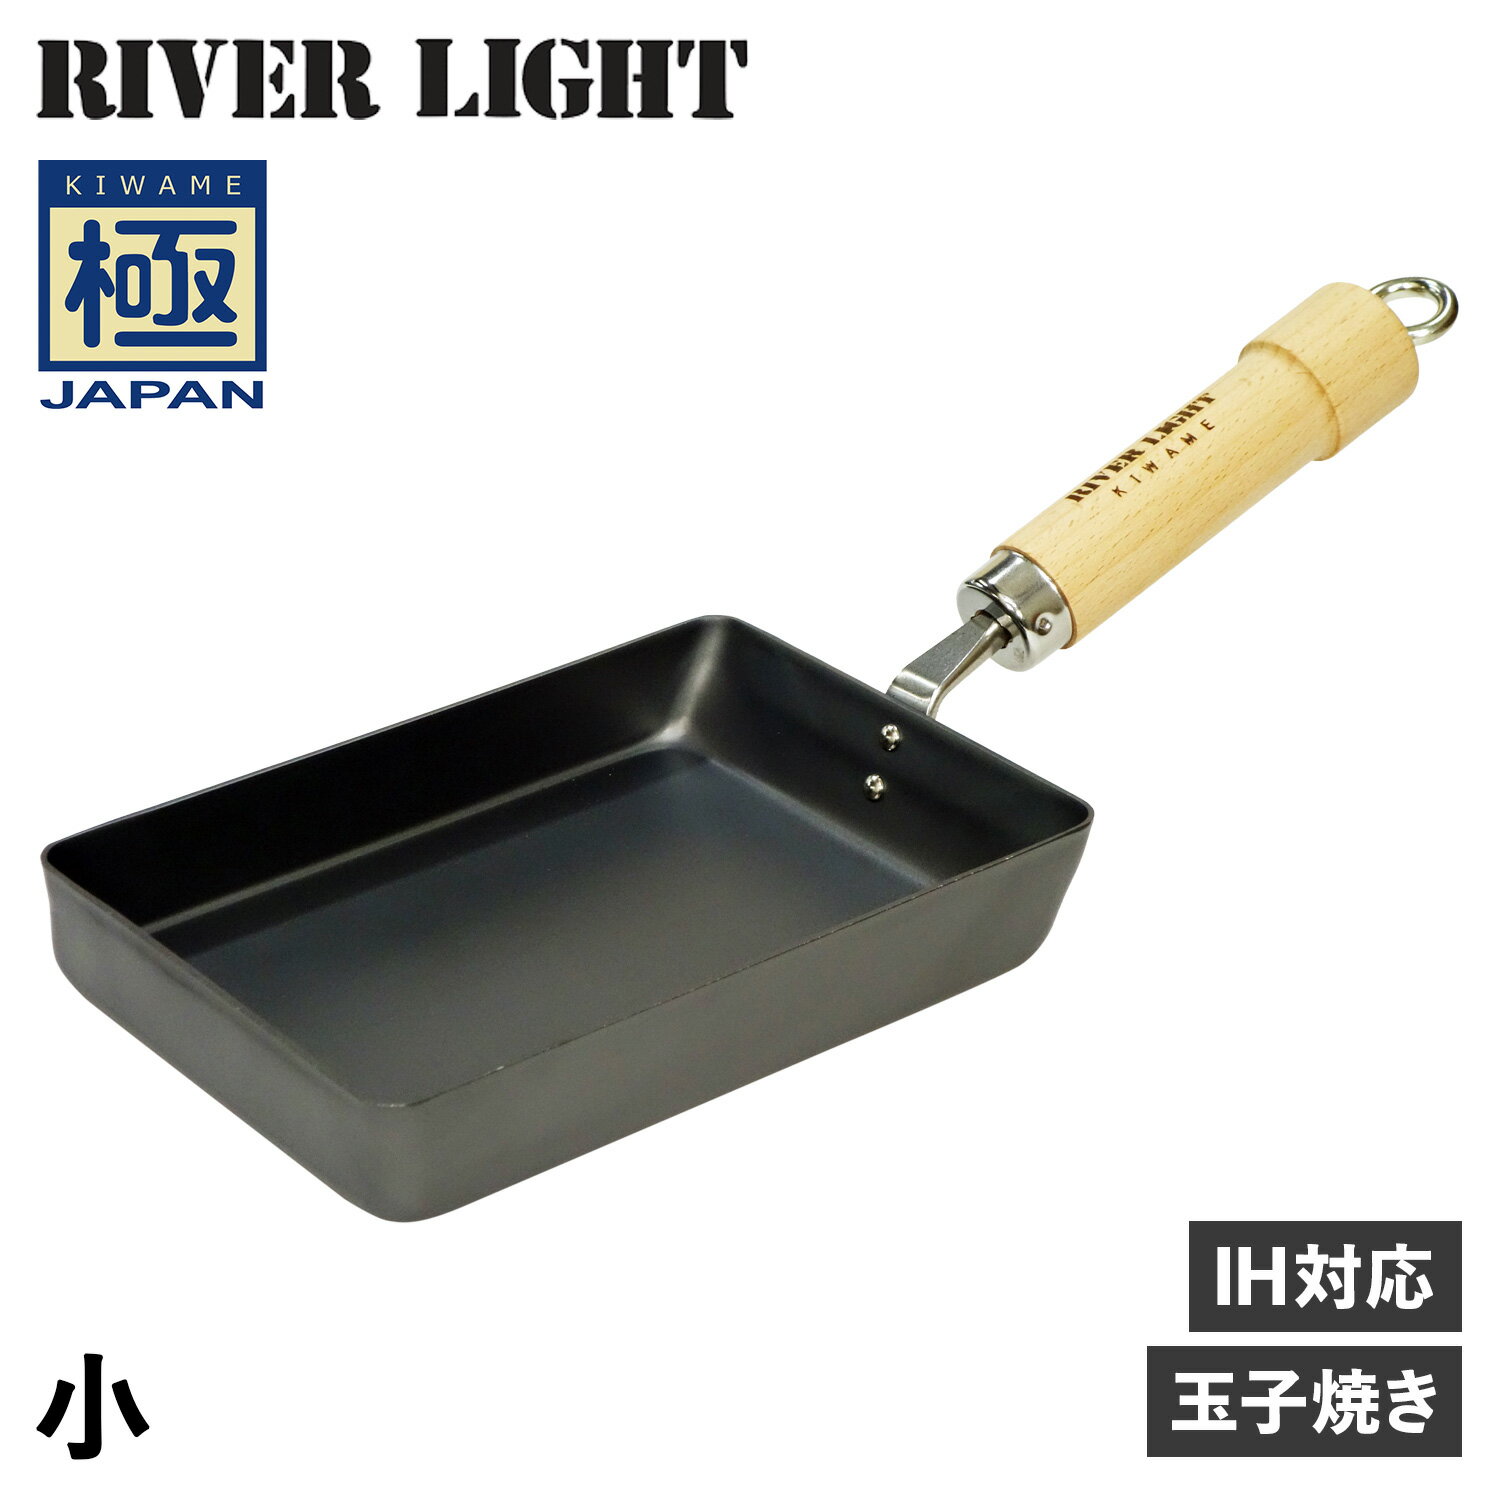 リバーライト RIVER LIGHT 極 卵焼き器 フライパン 小 IH ガス対応 小さい 鉄 極JAPAN J1613 アウトドア